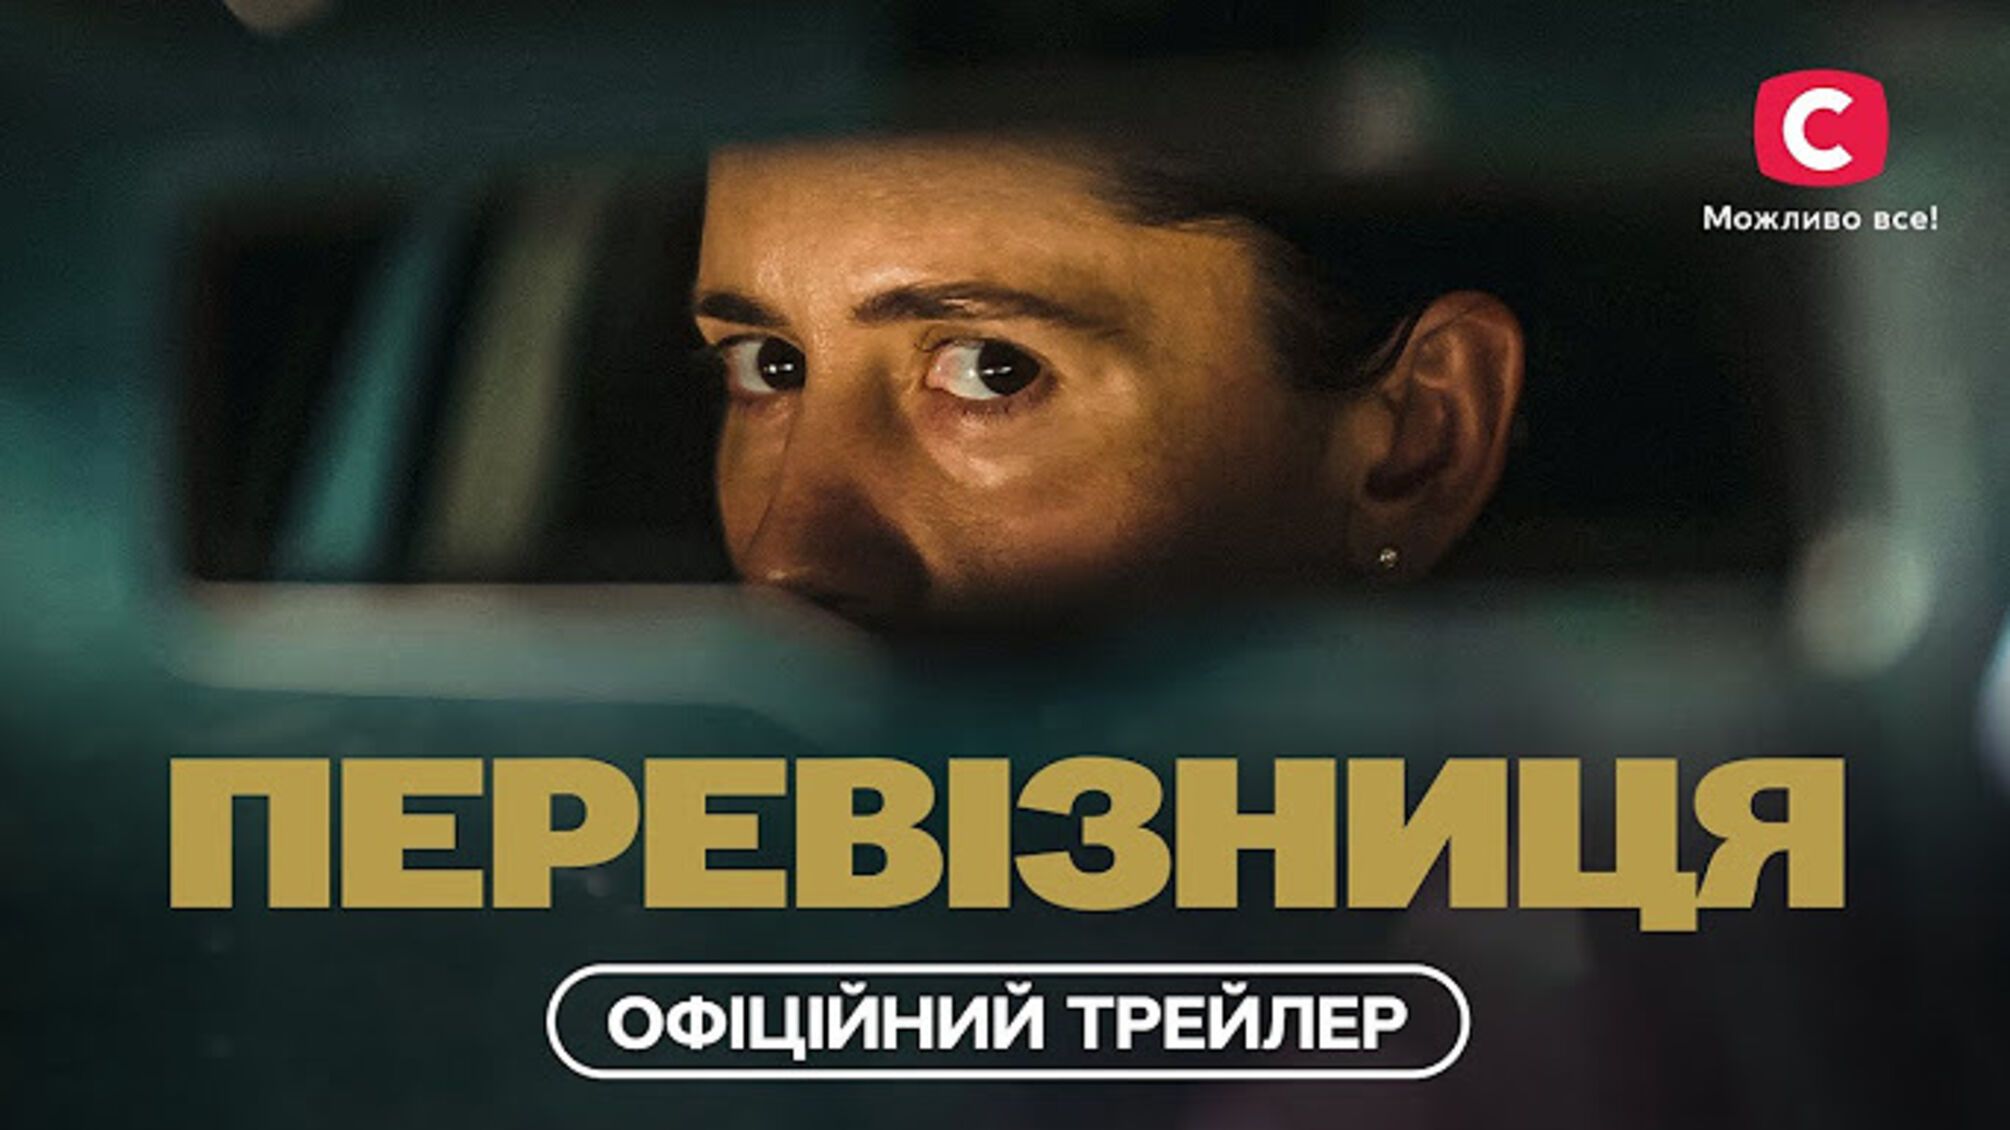 Кристина Решетник поделилась впечатлениями от премьеры украино-европейского сериала 'Перевозница'